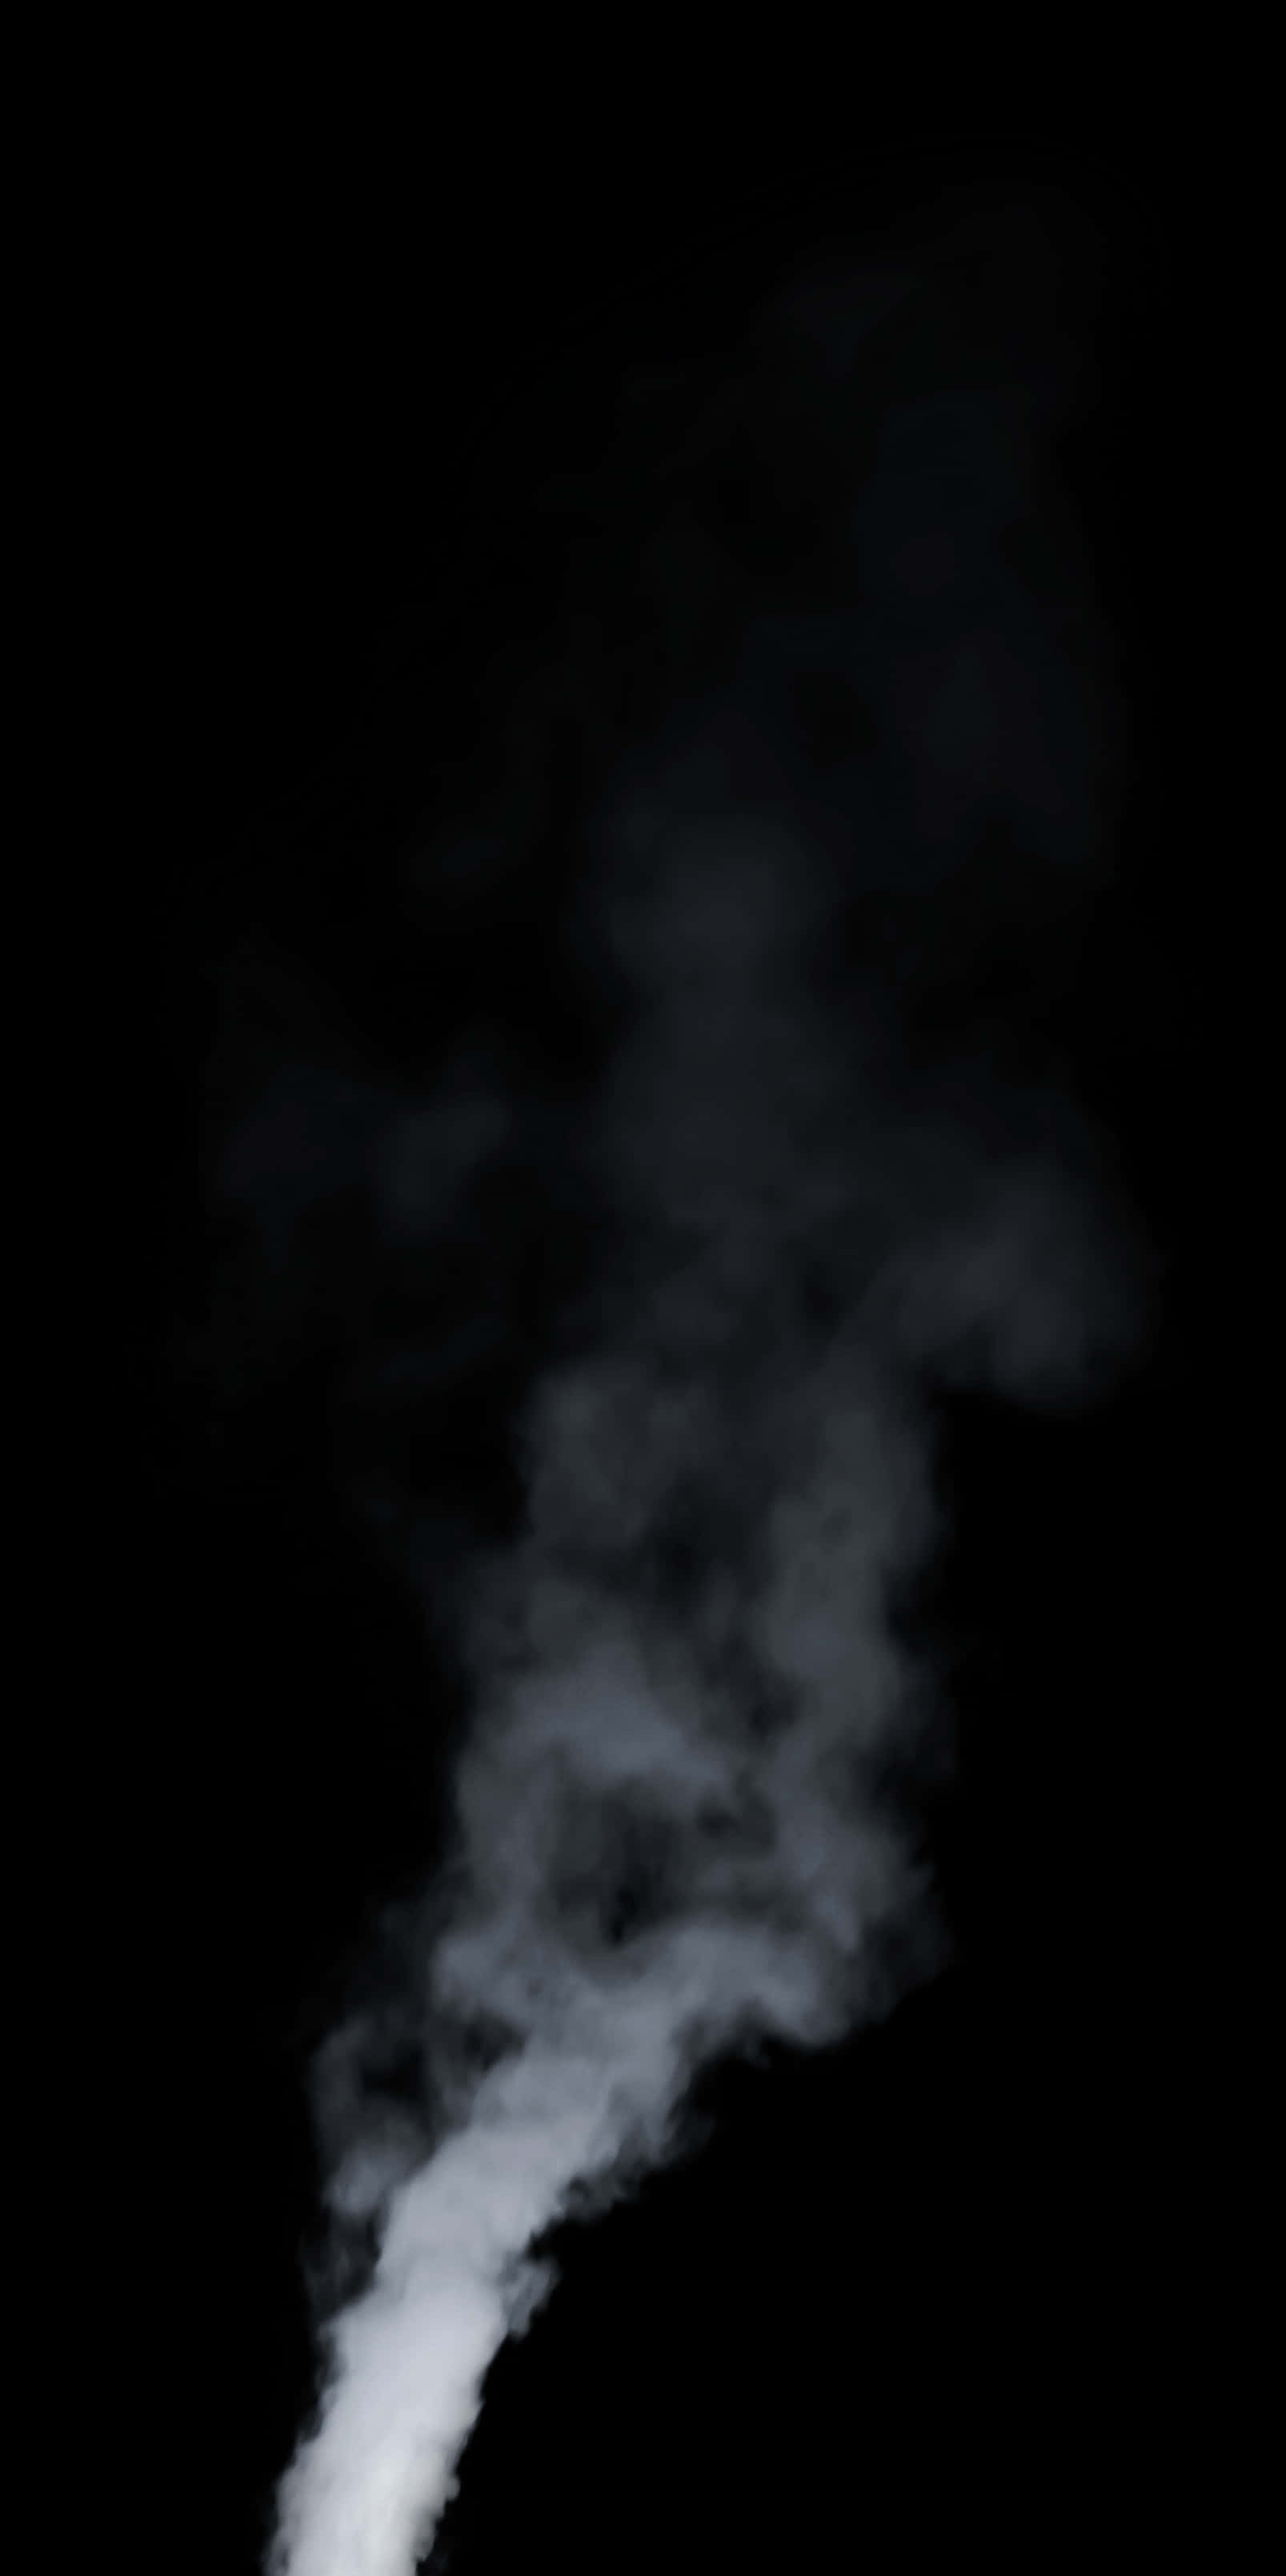 Ethereal_ Steam_ Ascending_ Dark_ Background.jpg PNG image